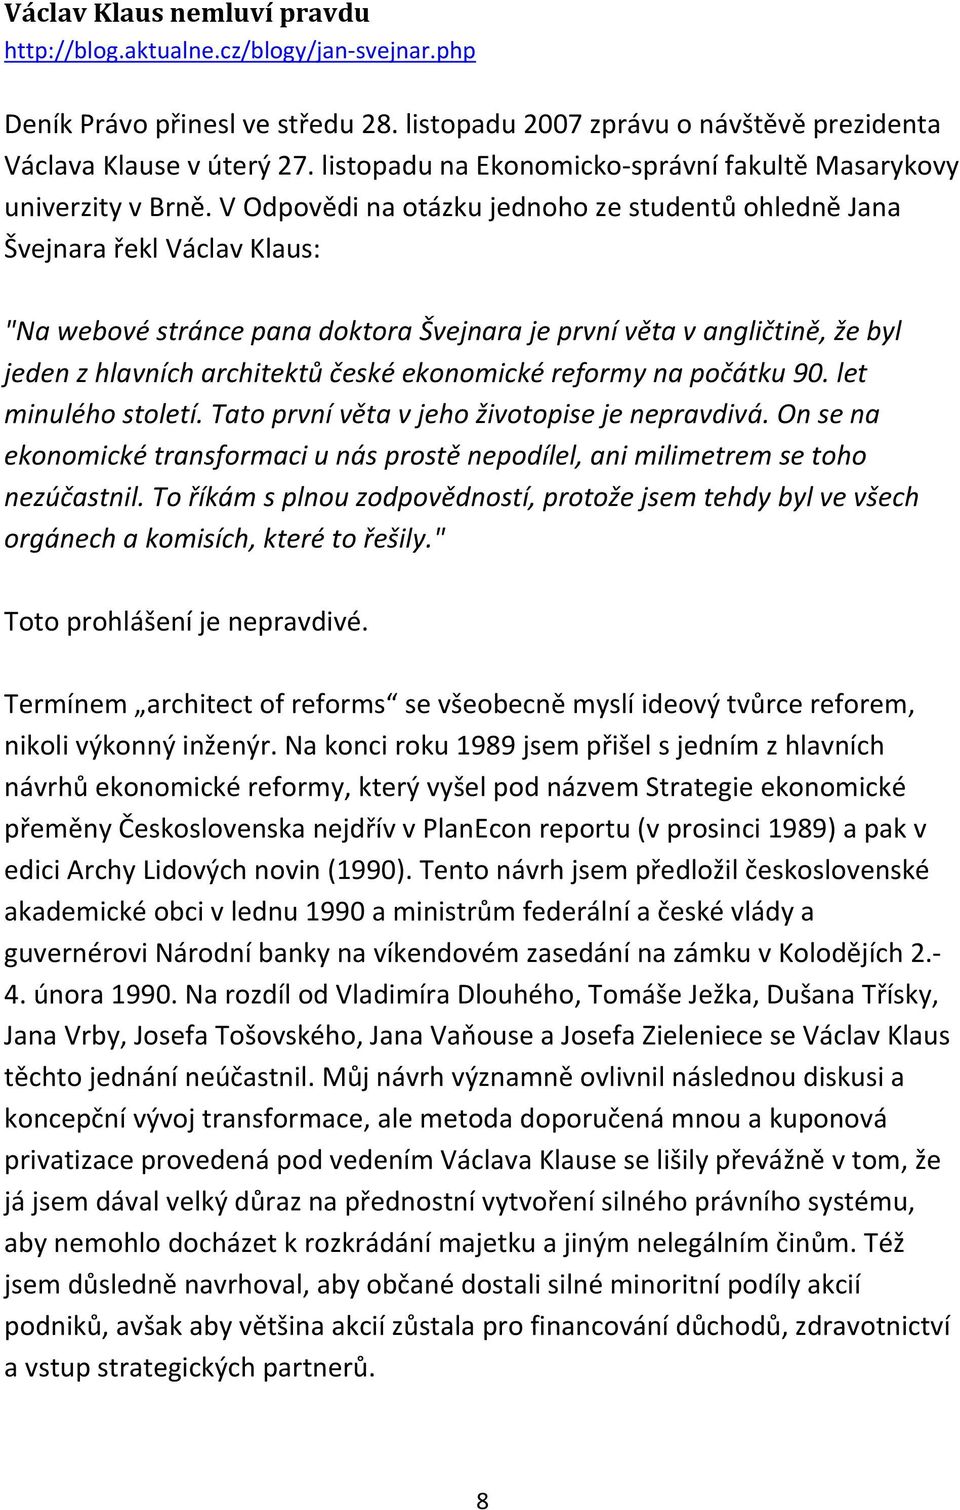 V Odpovědi na otázku jednoho ze studentů ohledně Jana Švejnara řekl Václav Klaus: "Na webové stránce pana doktora Švejnara je první věta v angličtině, že byl jeden z hlavních architektů české